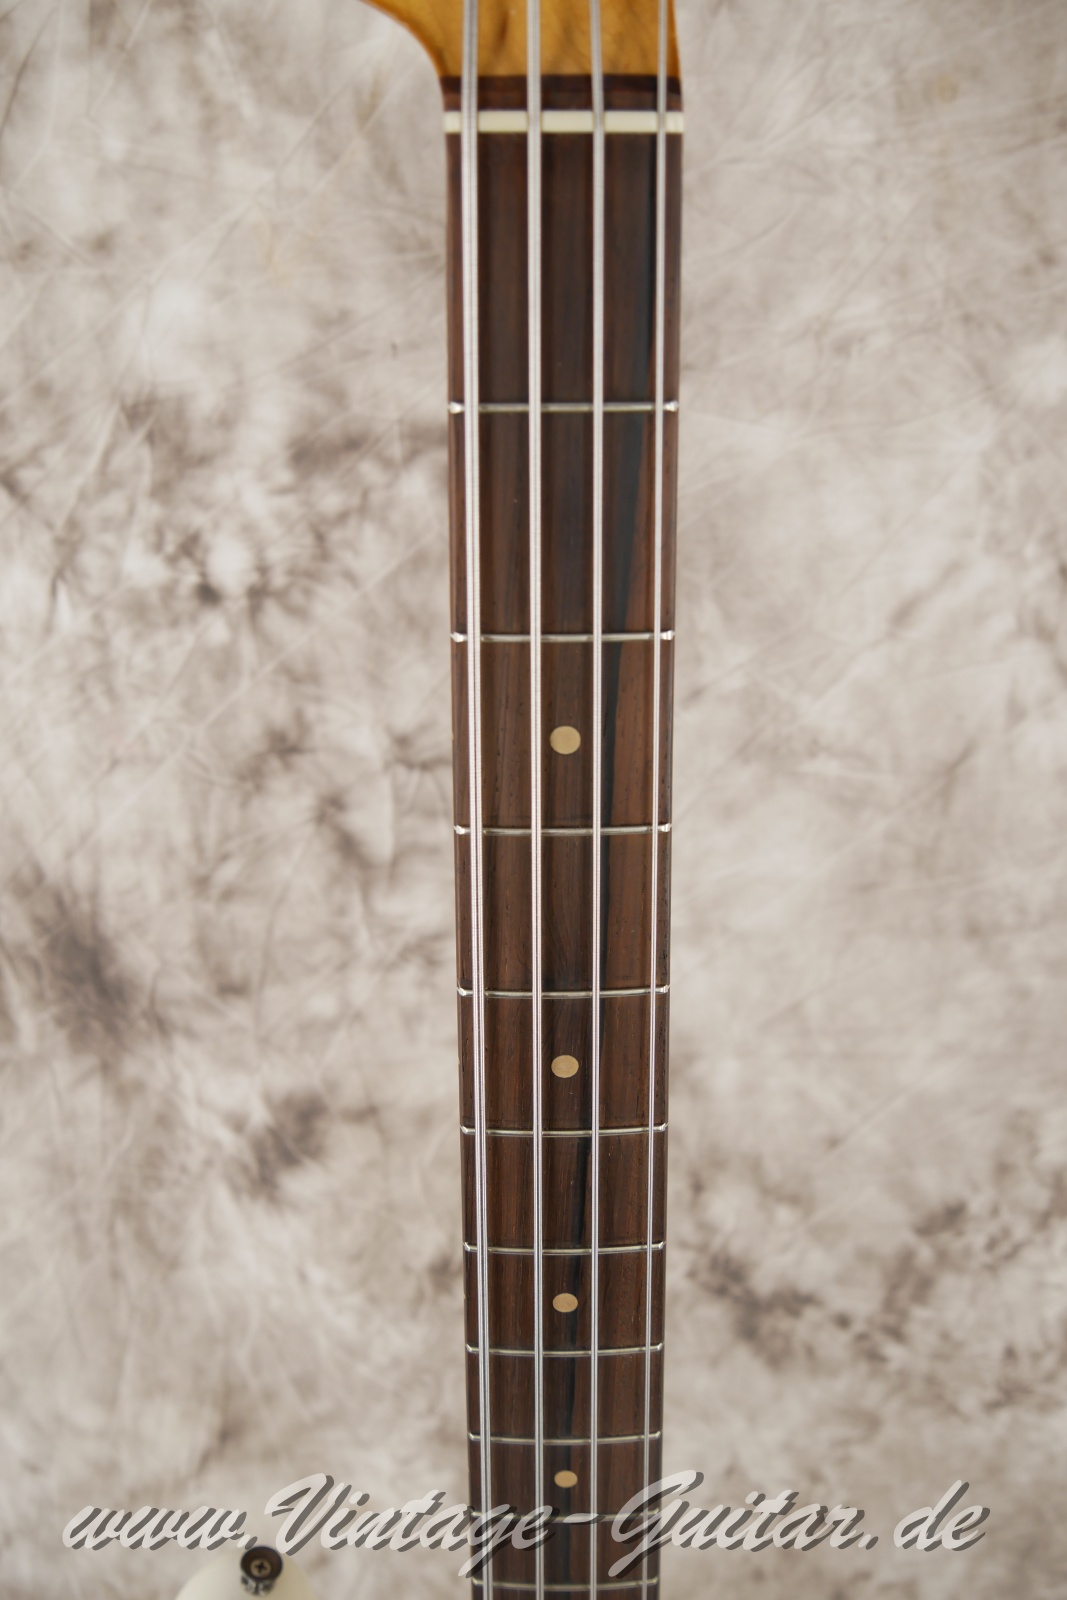 Fender-Precision-Bass-1962-olympic-white-007.JPG